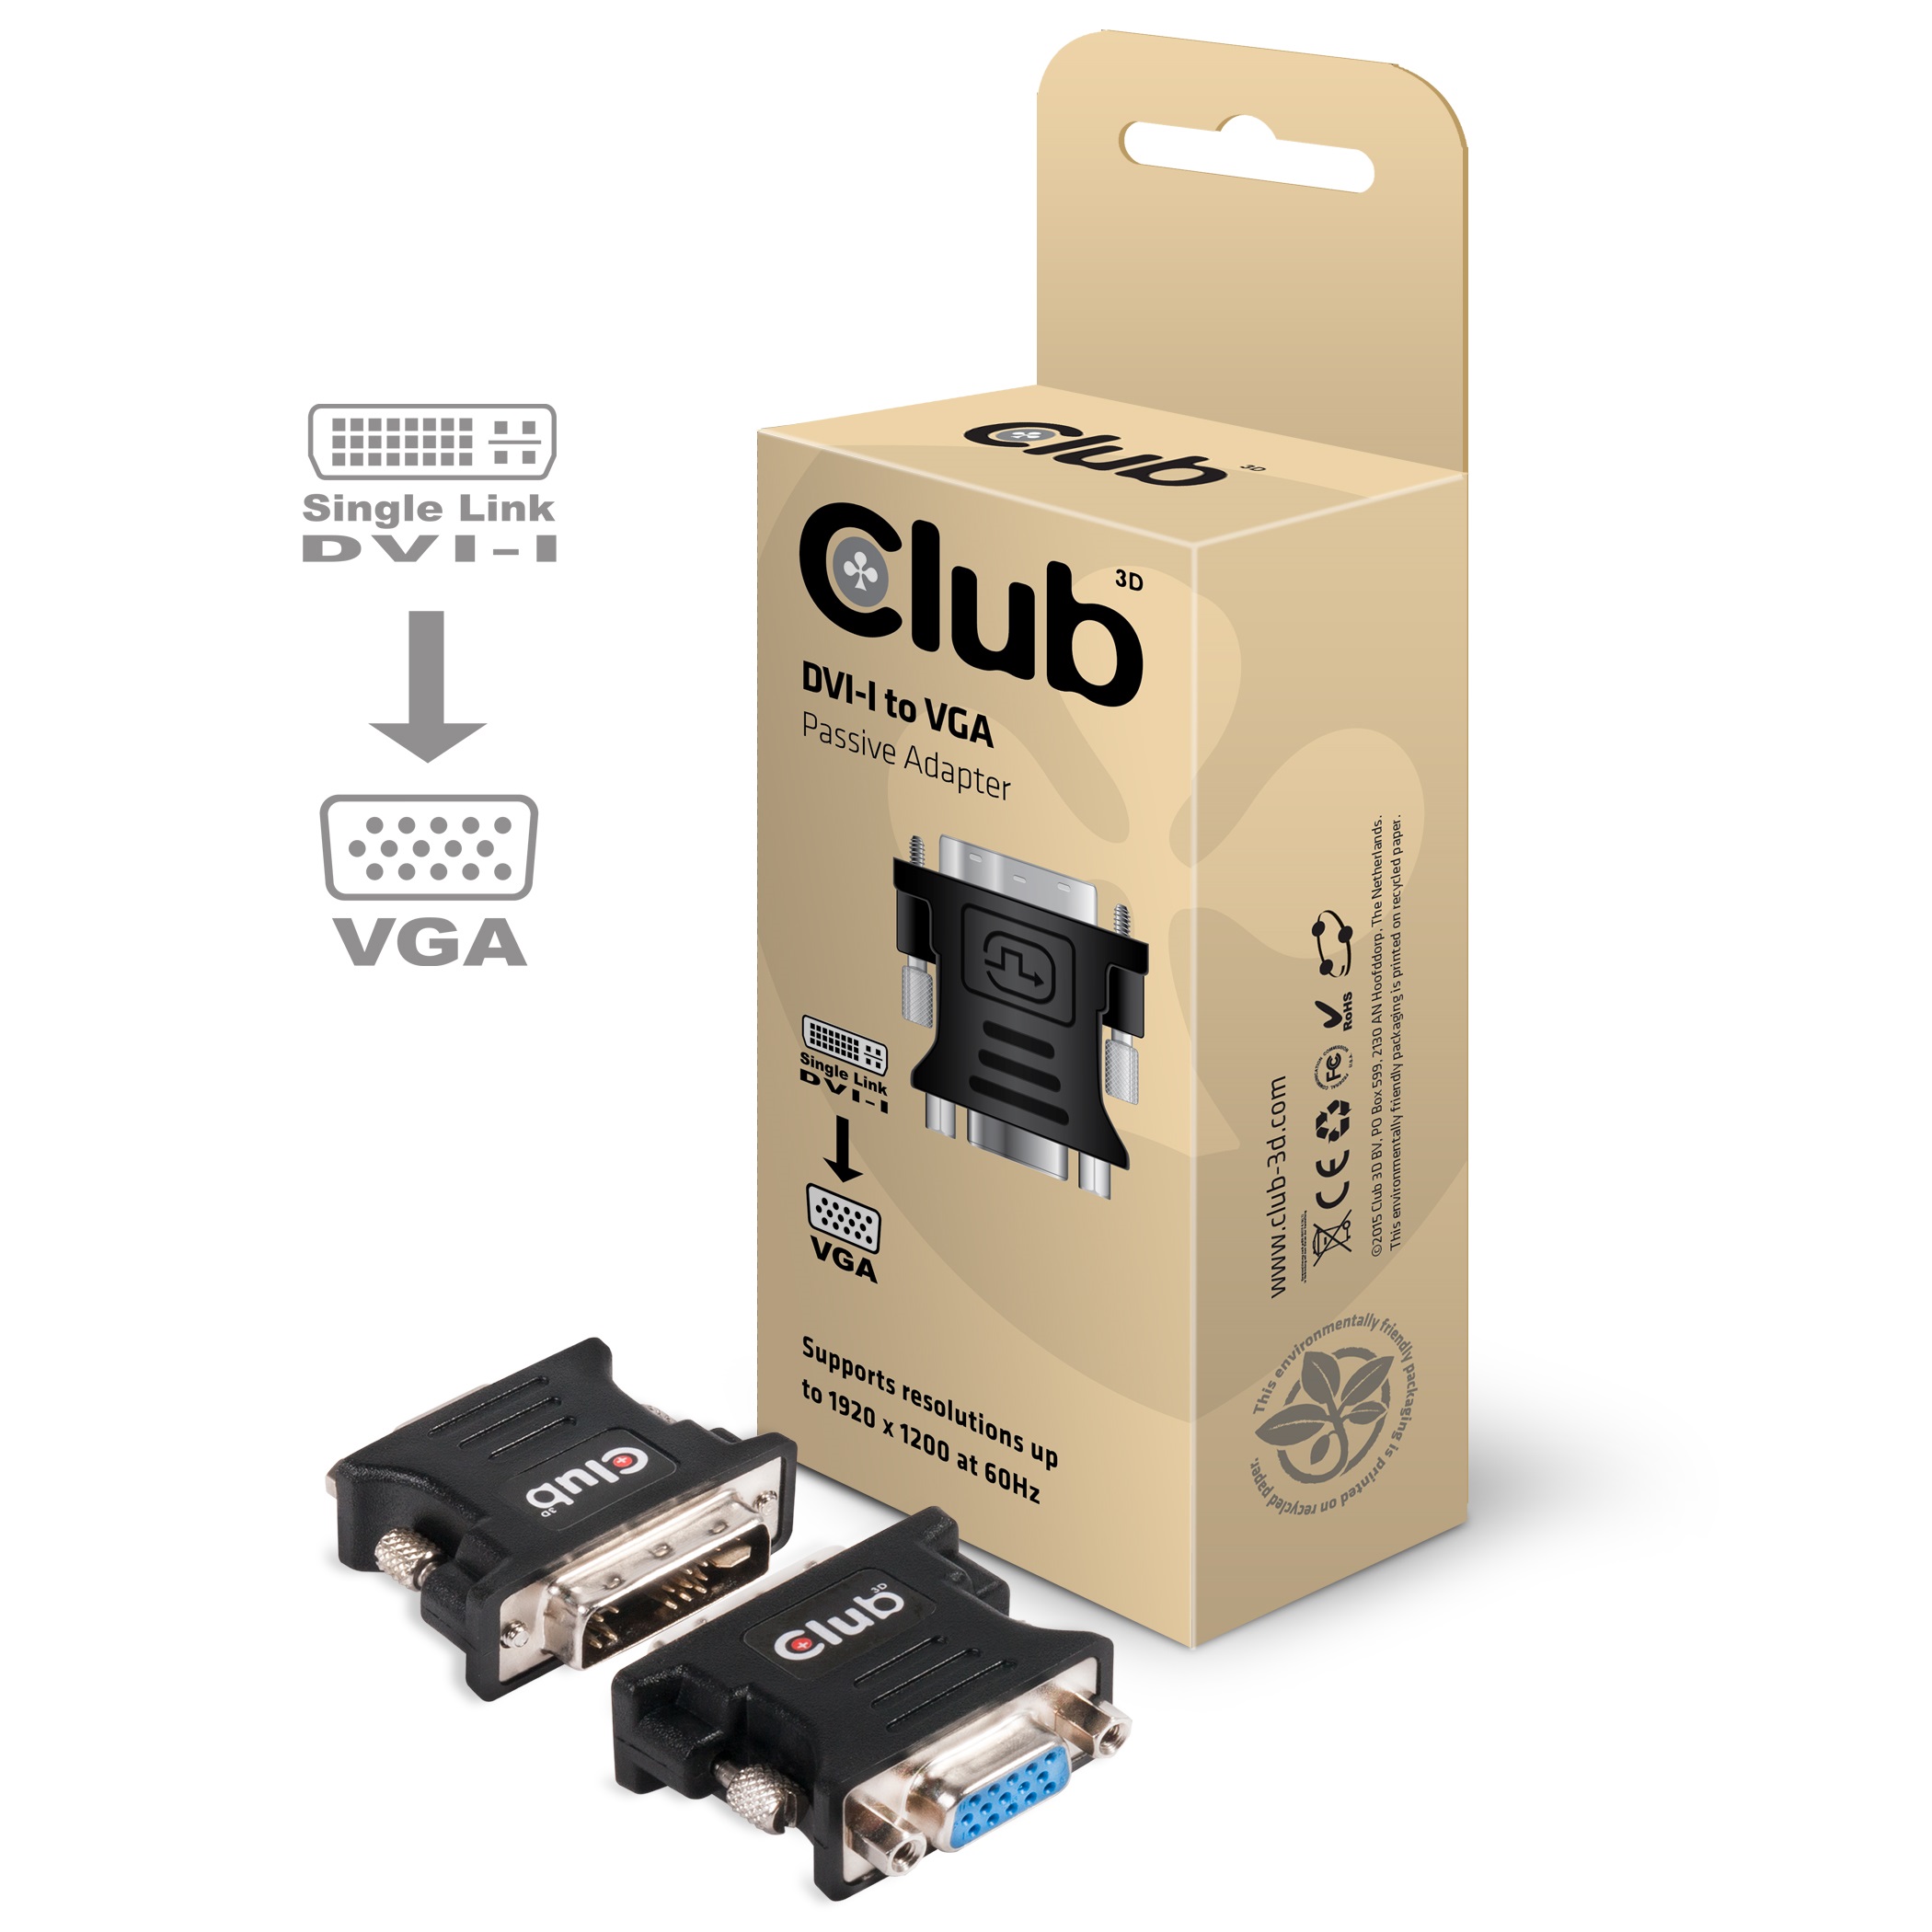 Adapter DVI-I => VGA *Club3D* passiv